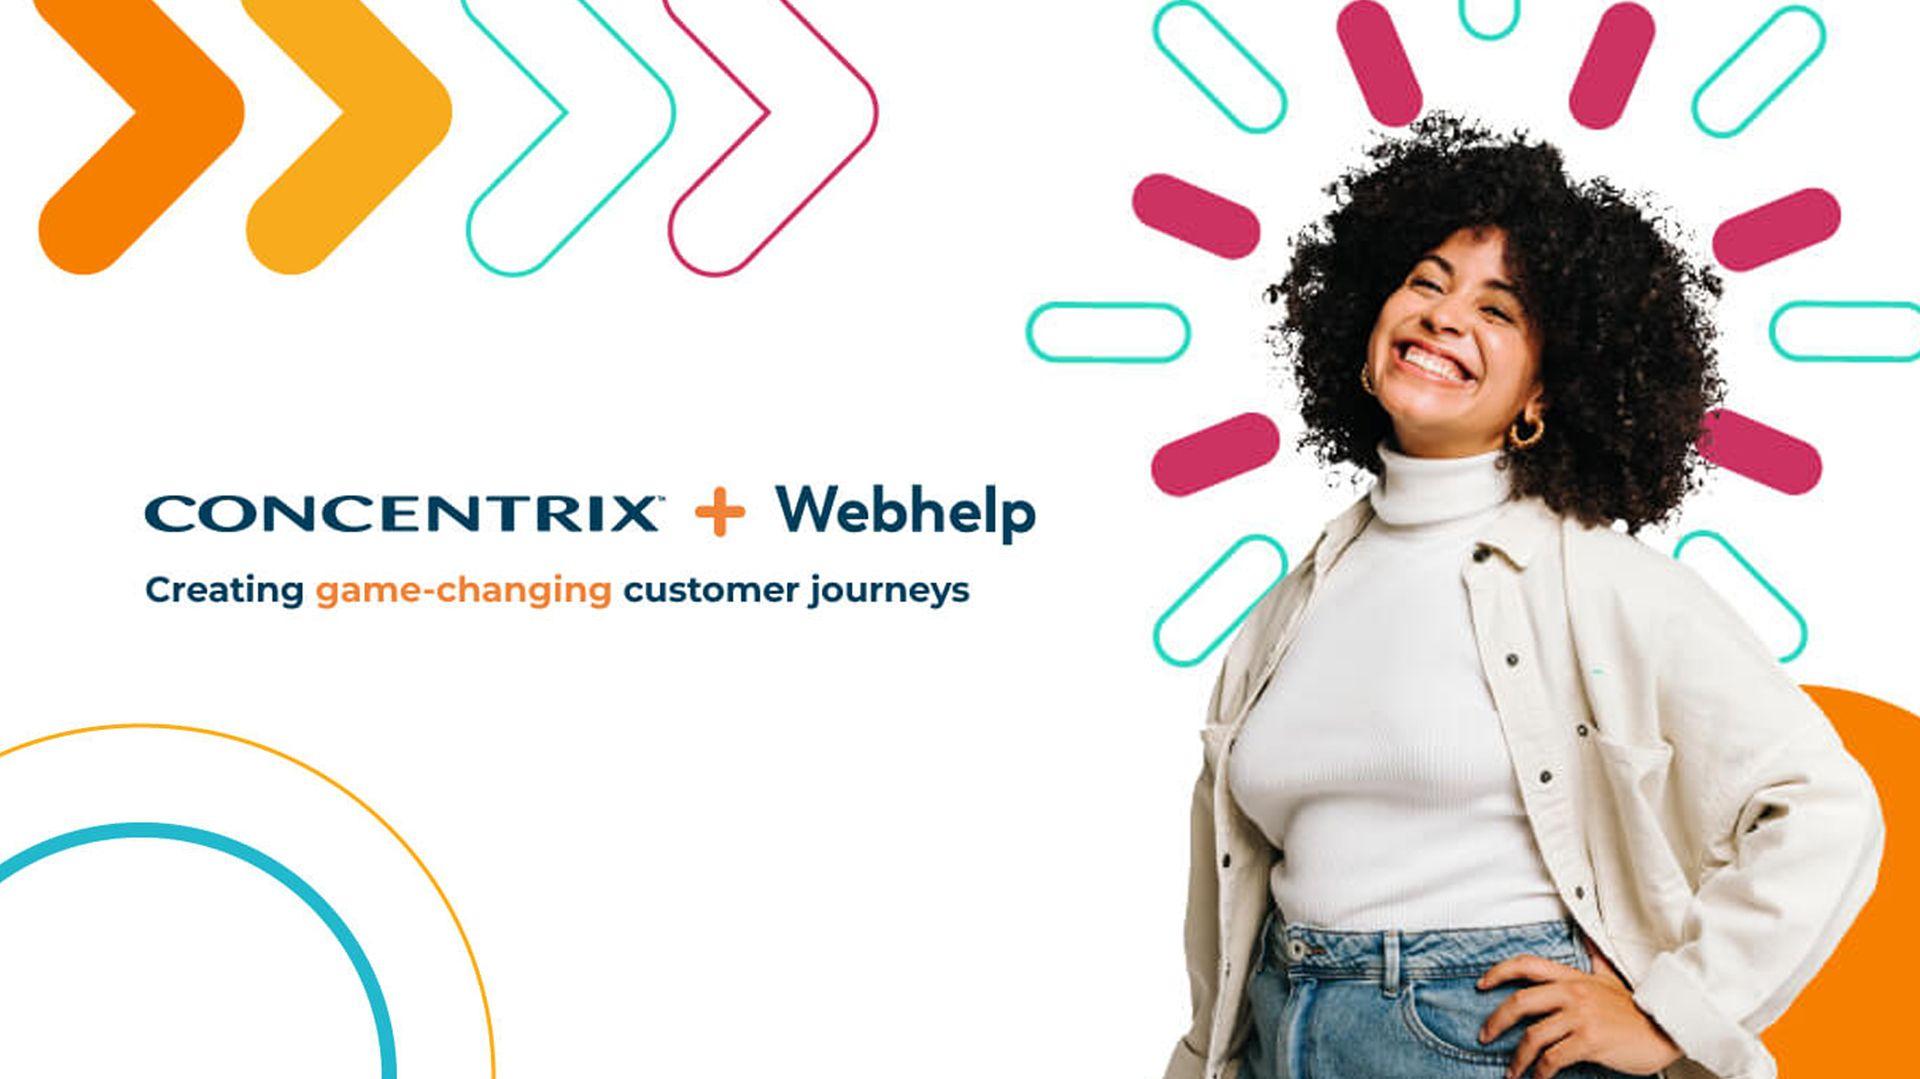 Concentrix i Webhelp potpuna kombinacija, stvaraju raznolikog globalnog CX lidera, dobro pozicioniranog za rast